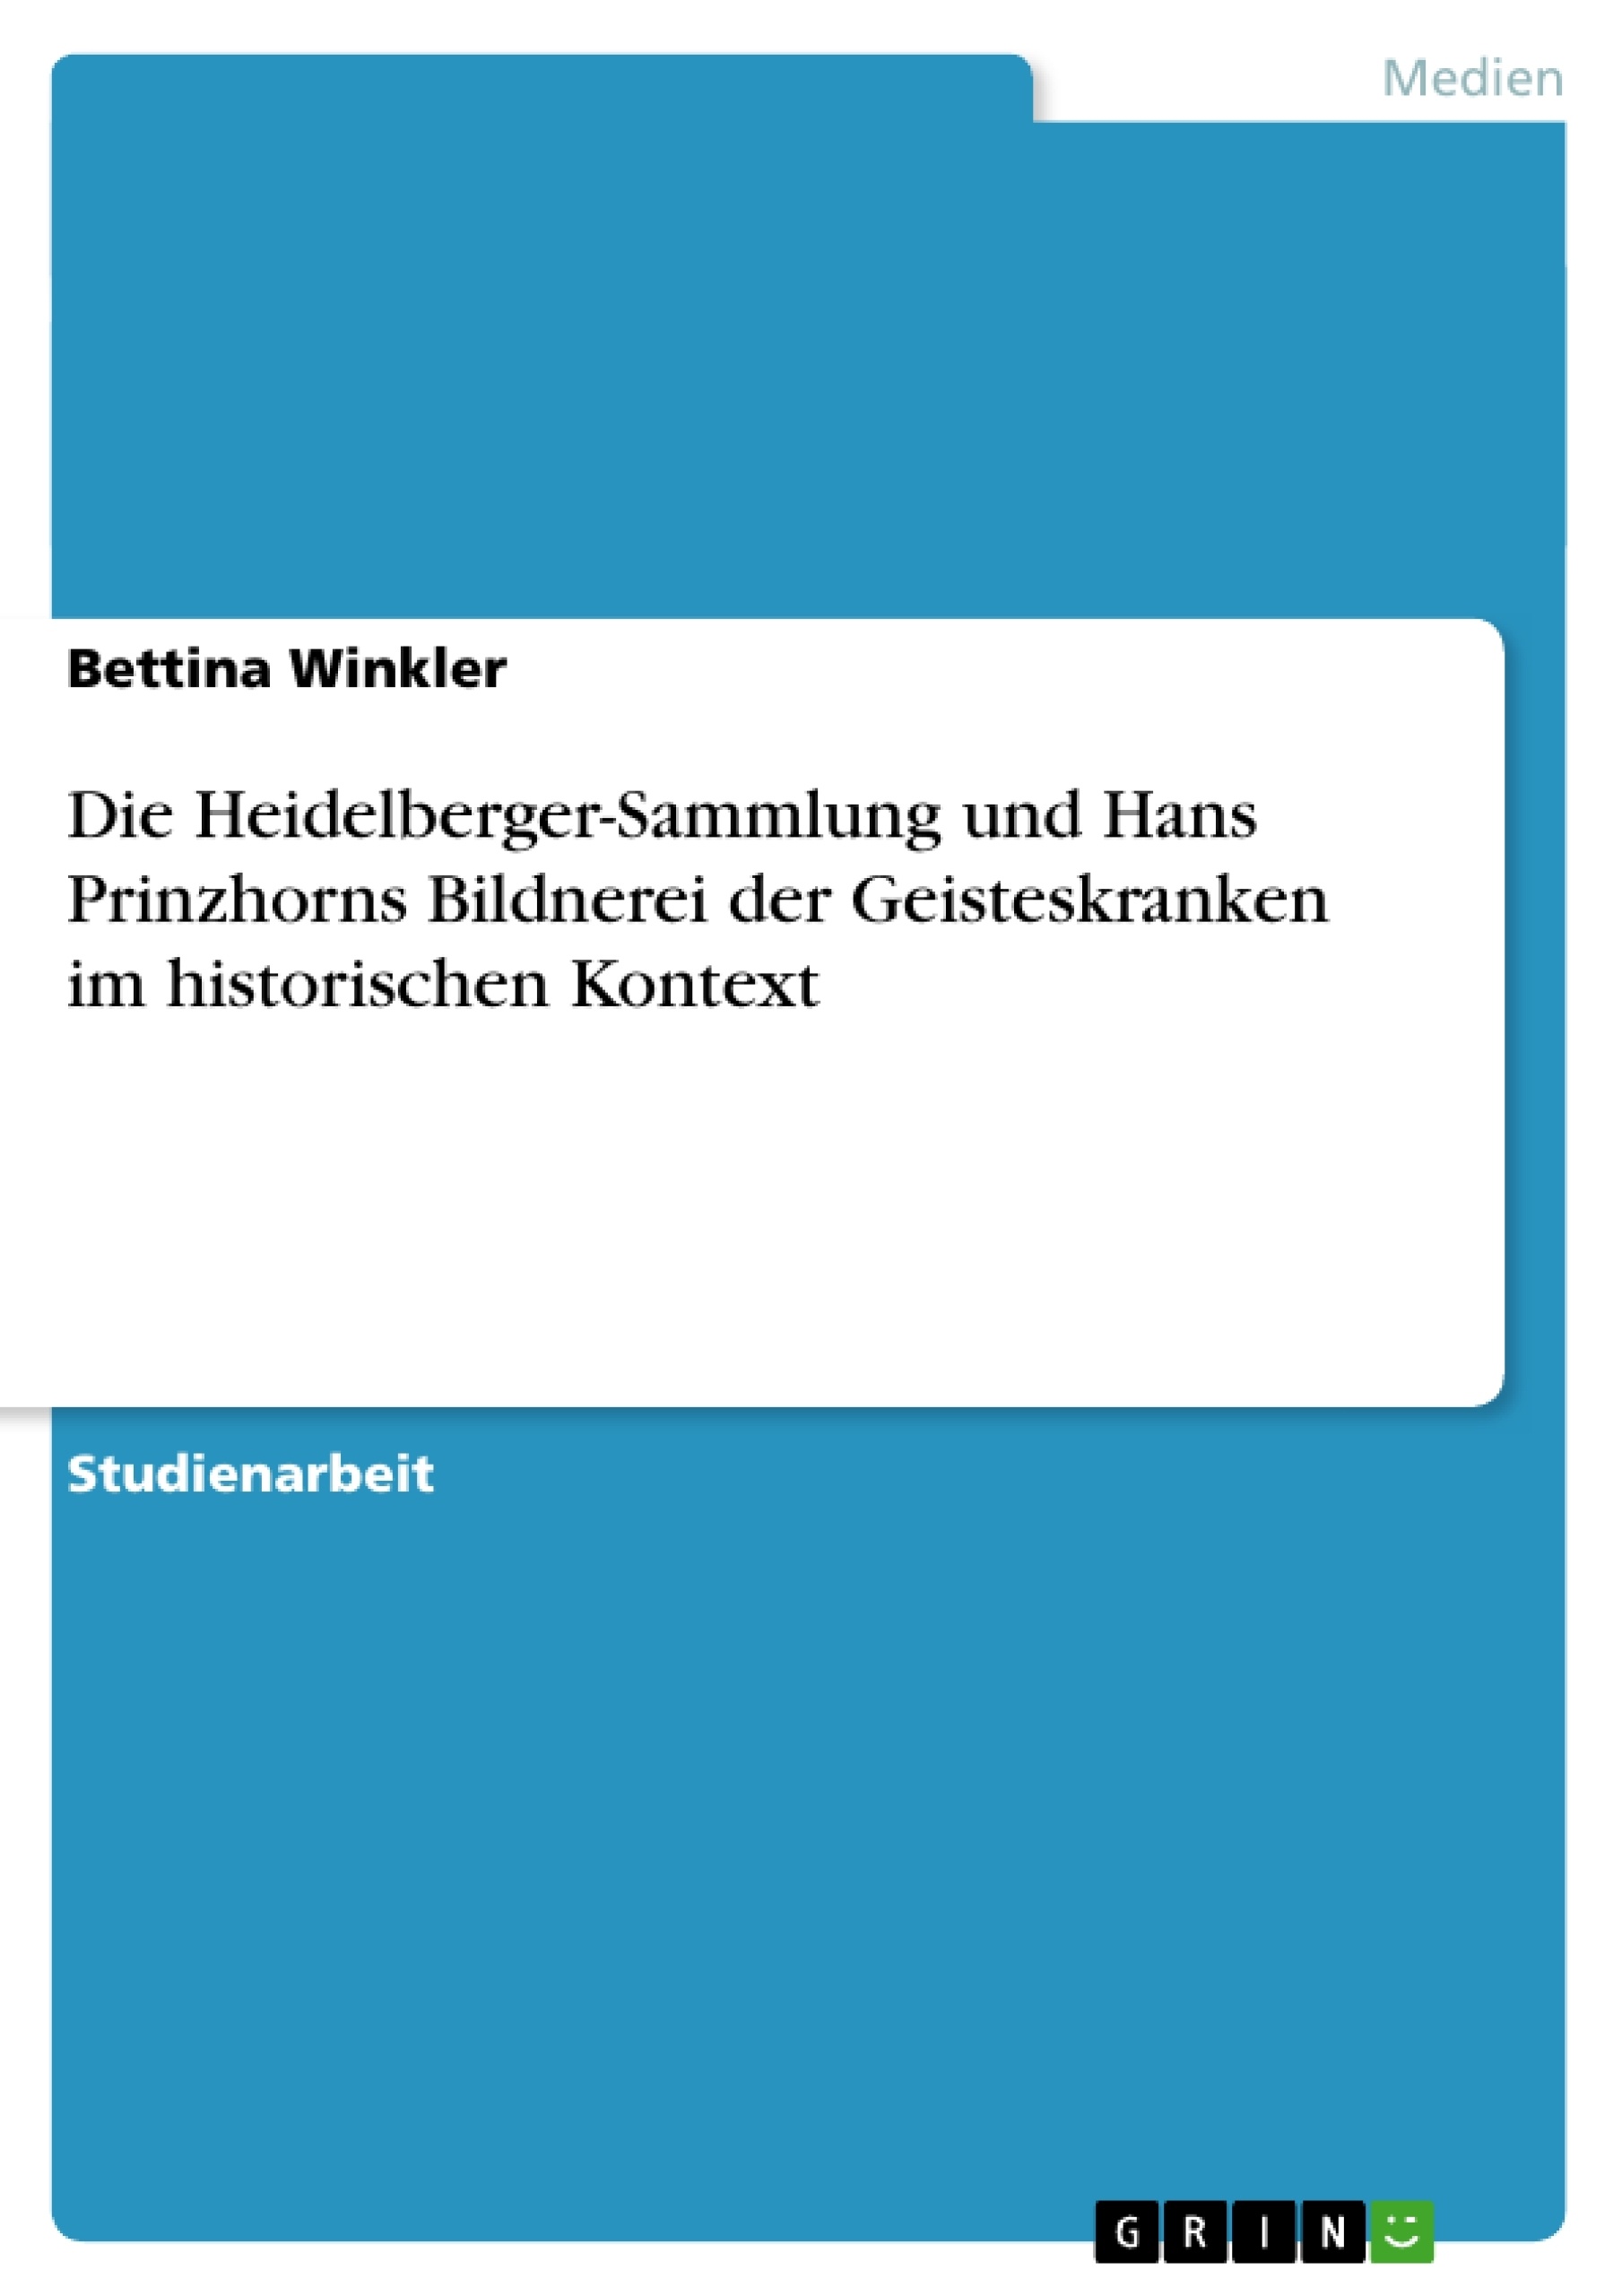 Title: Die Heidelberger-Sammlung und Hans Prinzhorns  Bildnerei der Geisteskranken  im historischen Kontext